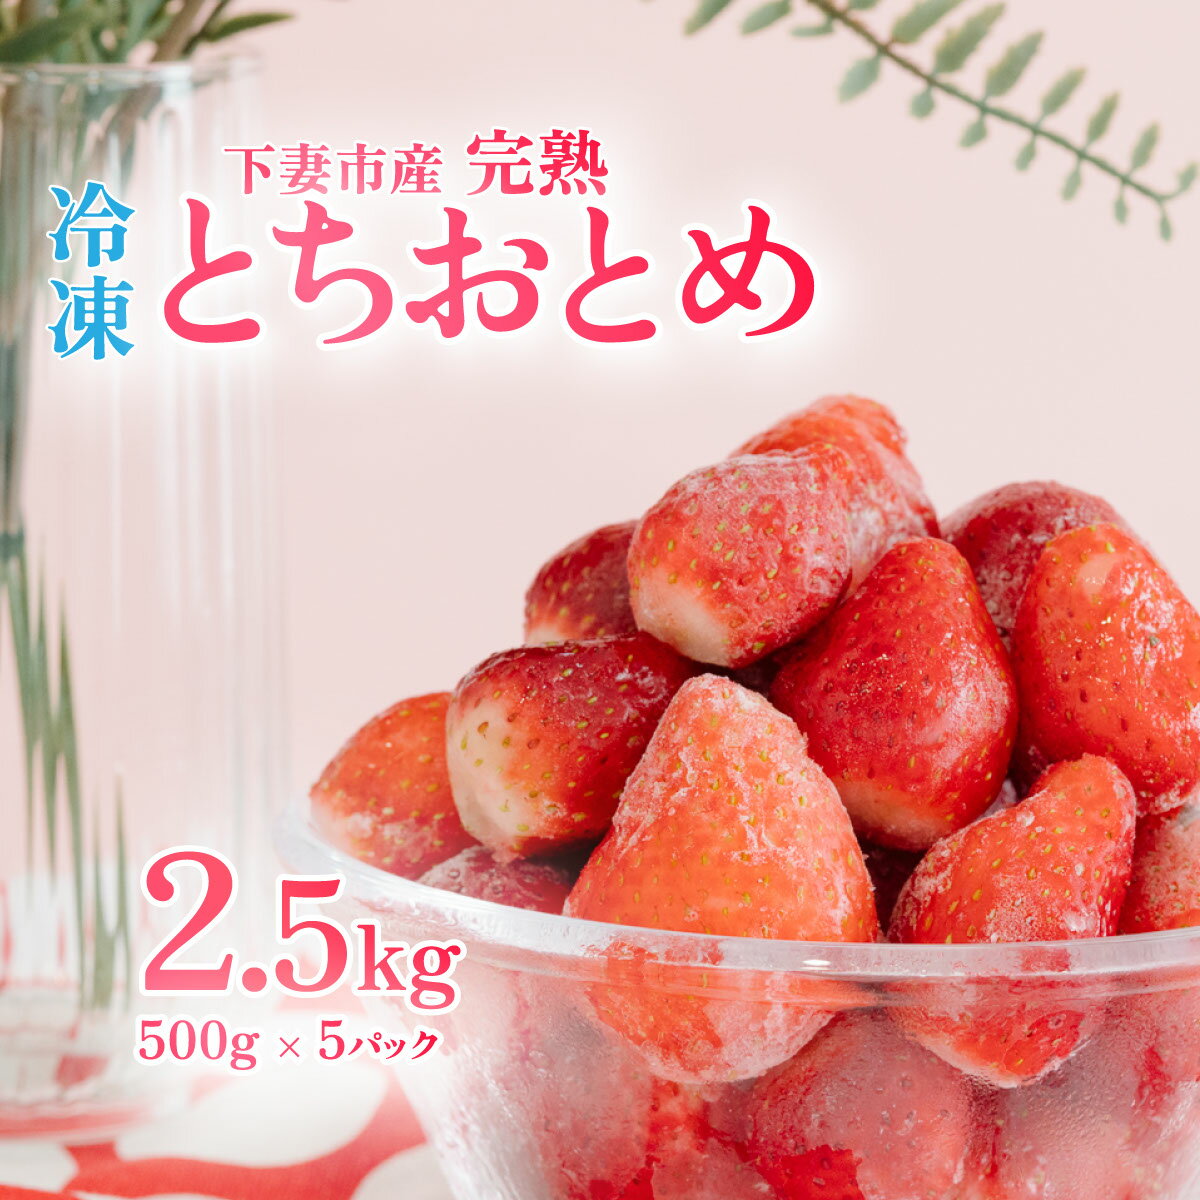 【ふるさと納税】【訳あり】 冷凍いちご 2.5kg (500